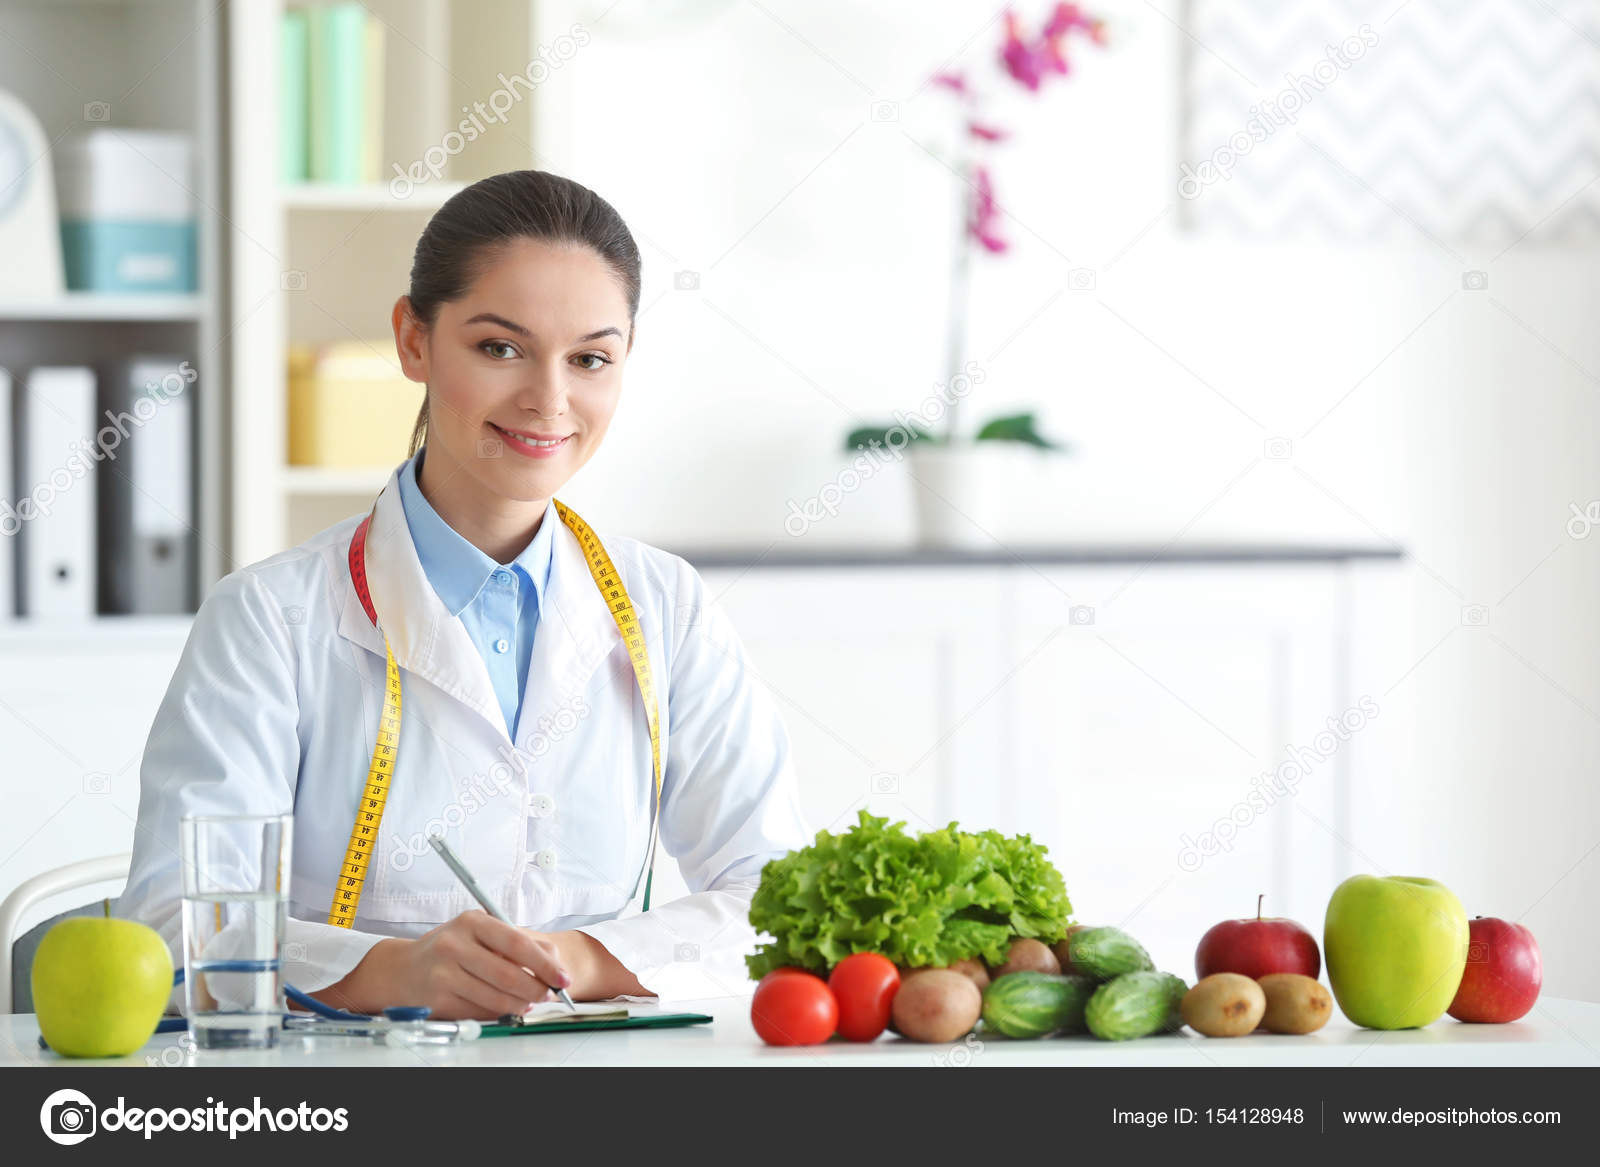 Resultado de imagen para images de una nutricionista